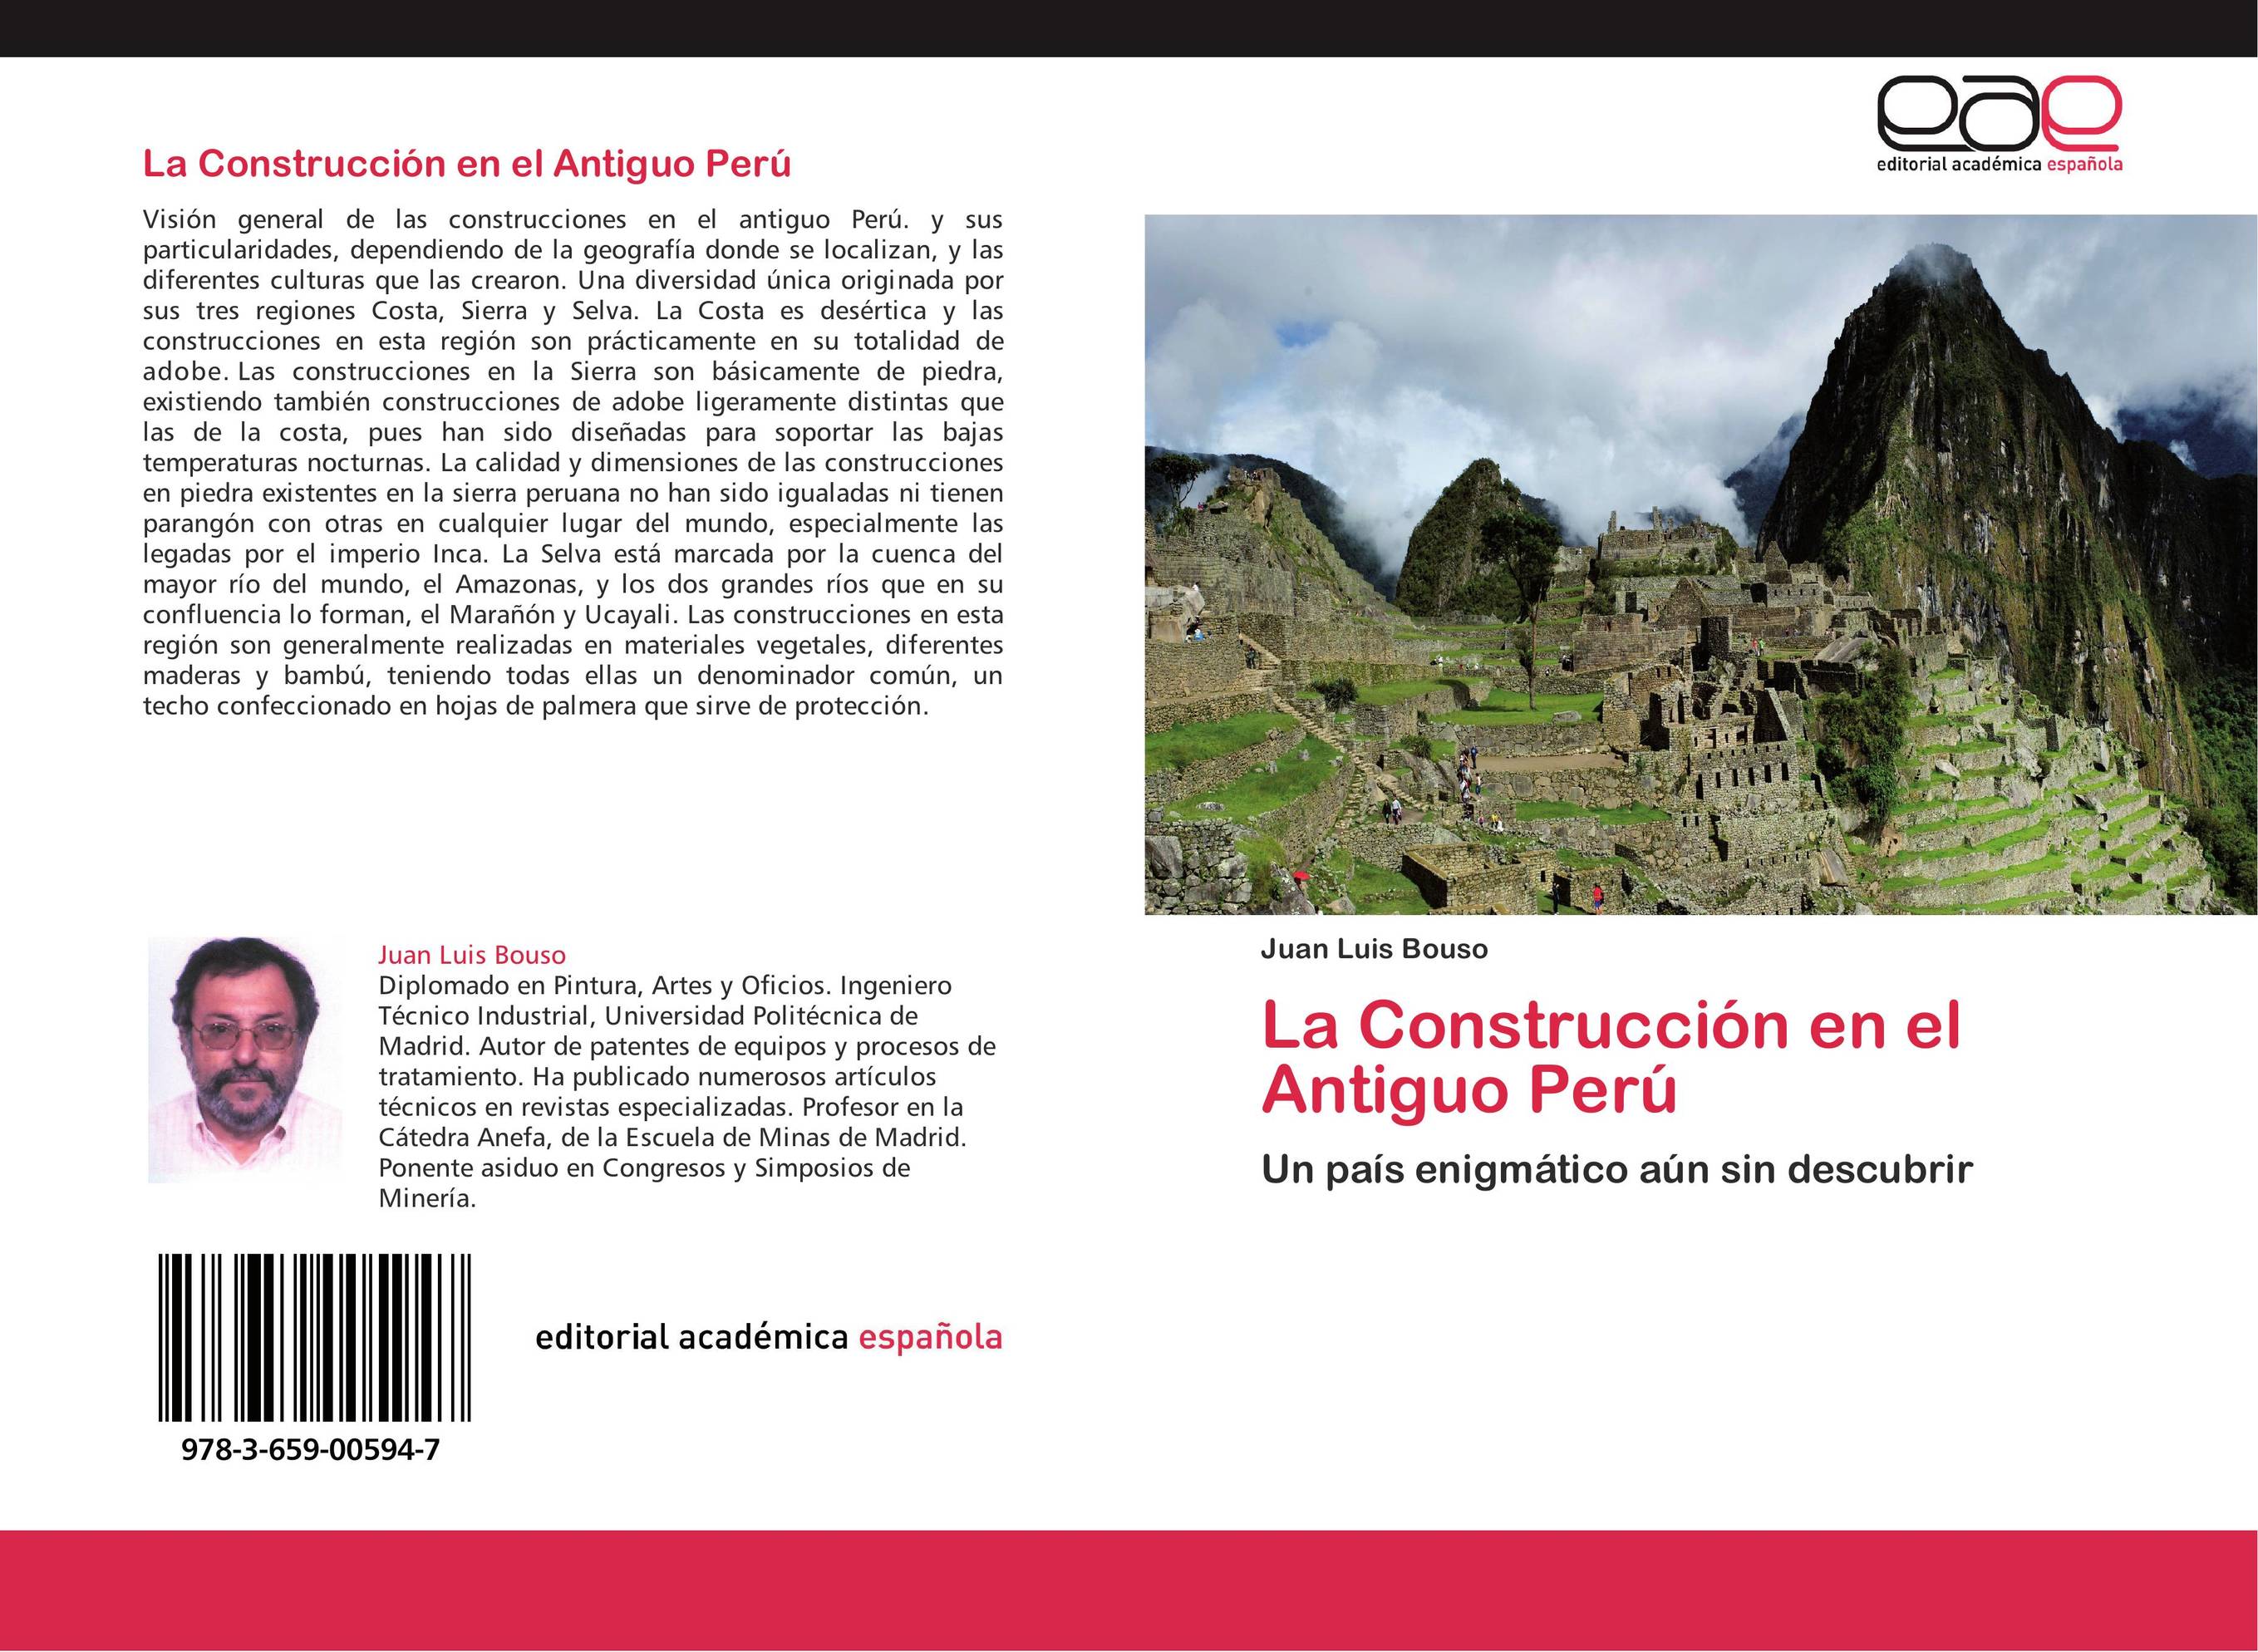 La Construcción en el Antiguo Perú